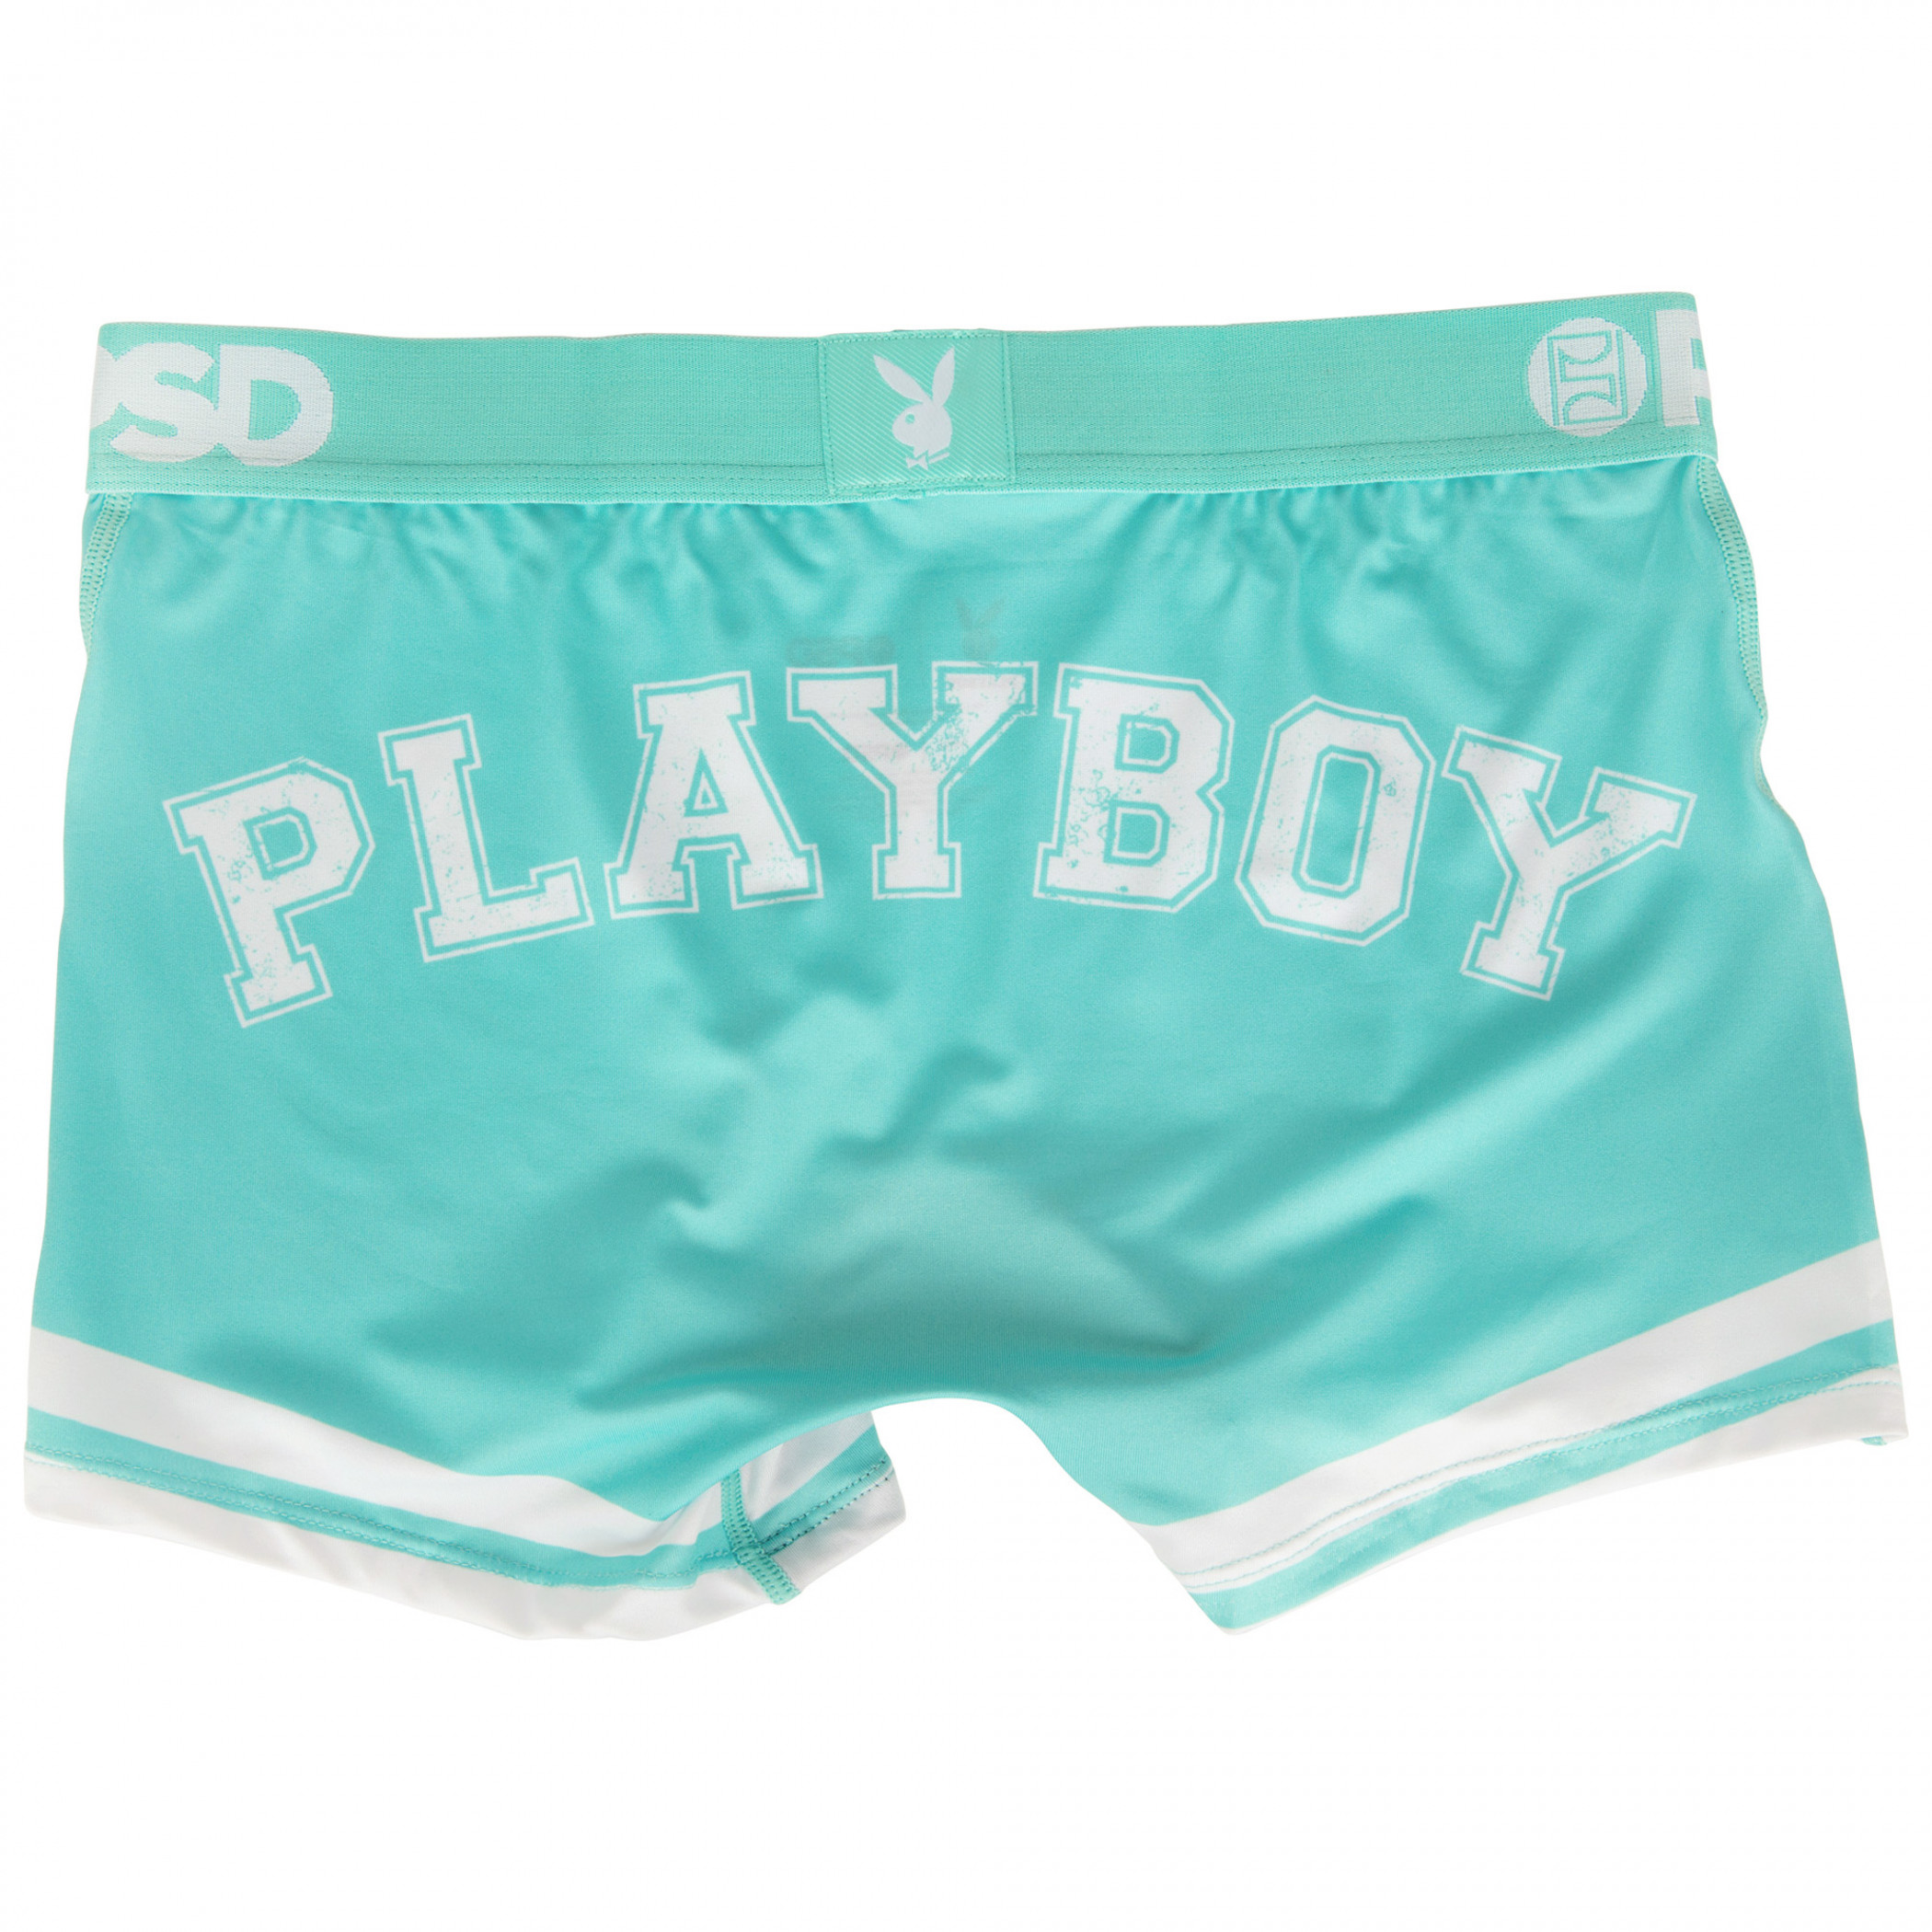 Playboy Varsity Style Microfiber Blend Women's PSD Boy Shorts Underwear